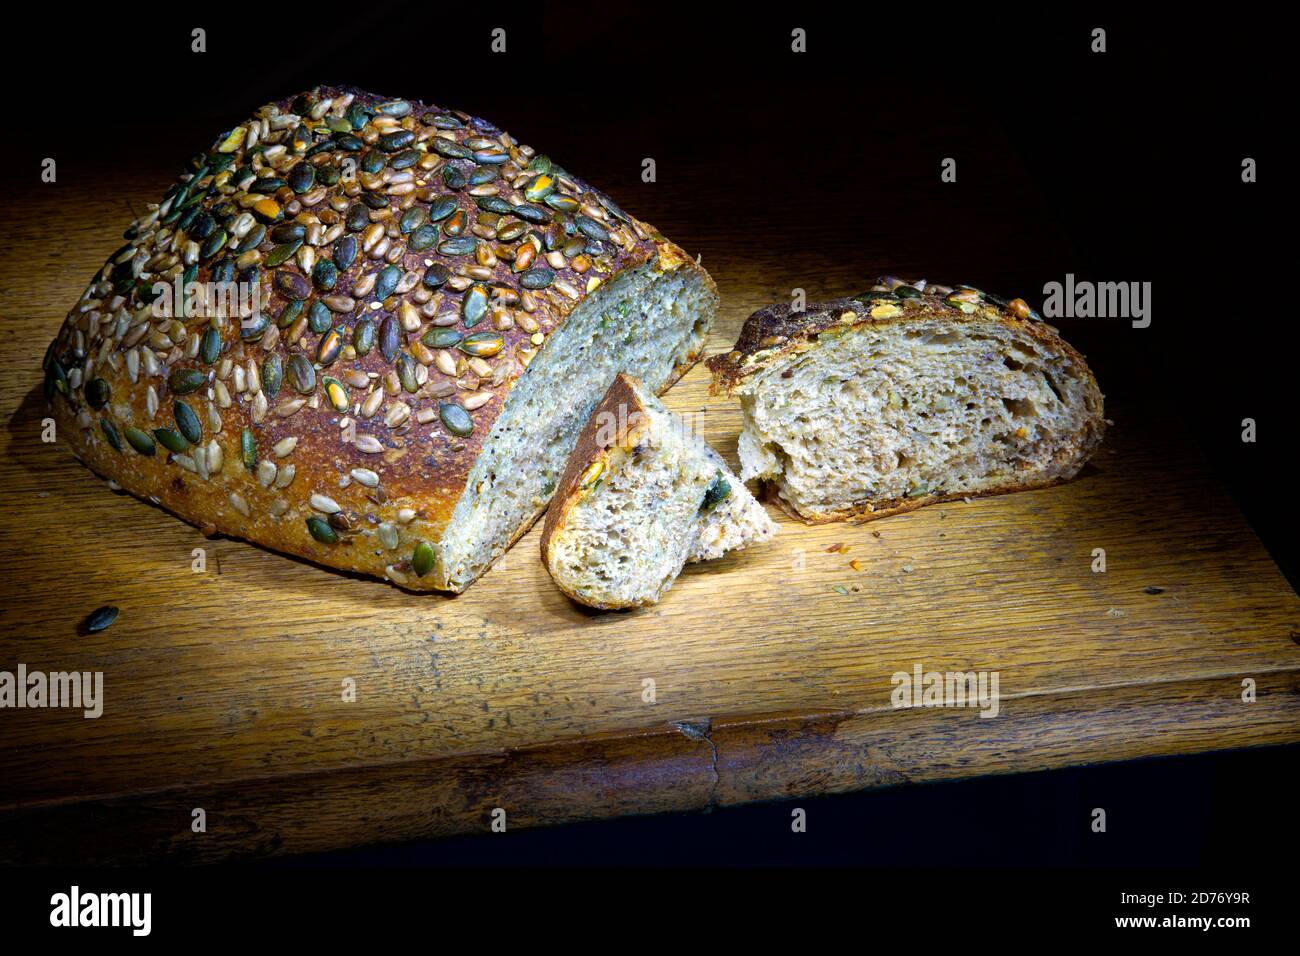 Multigrain bread. Stock Photo